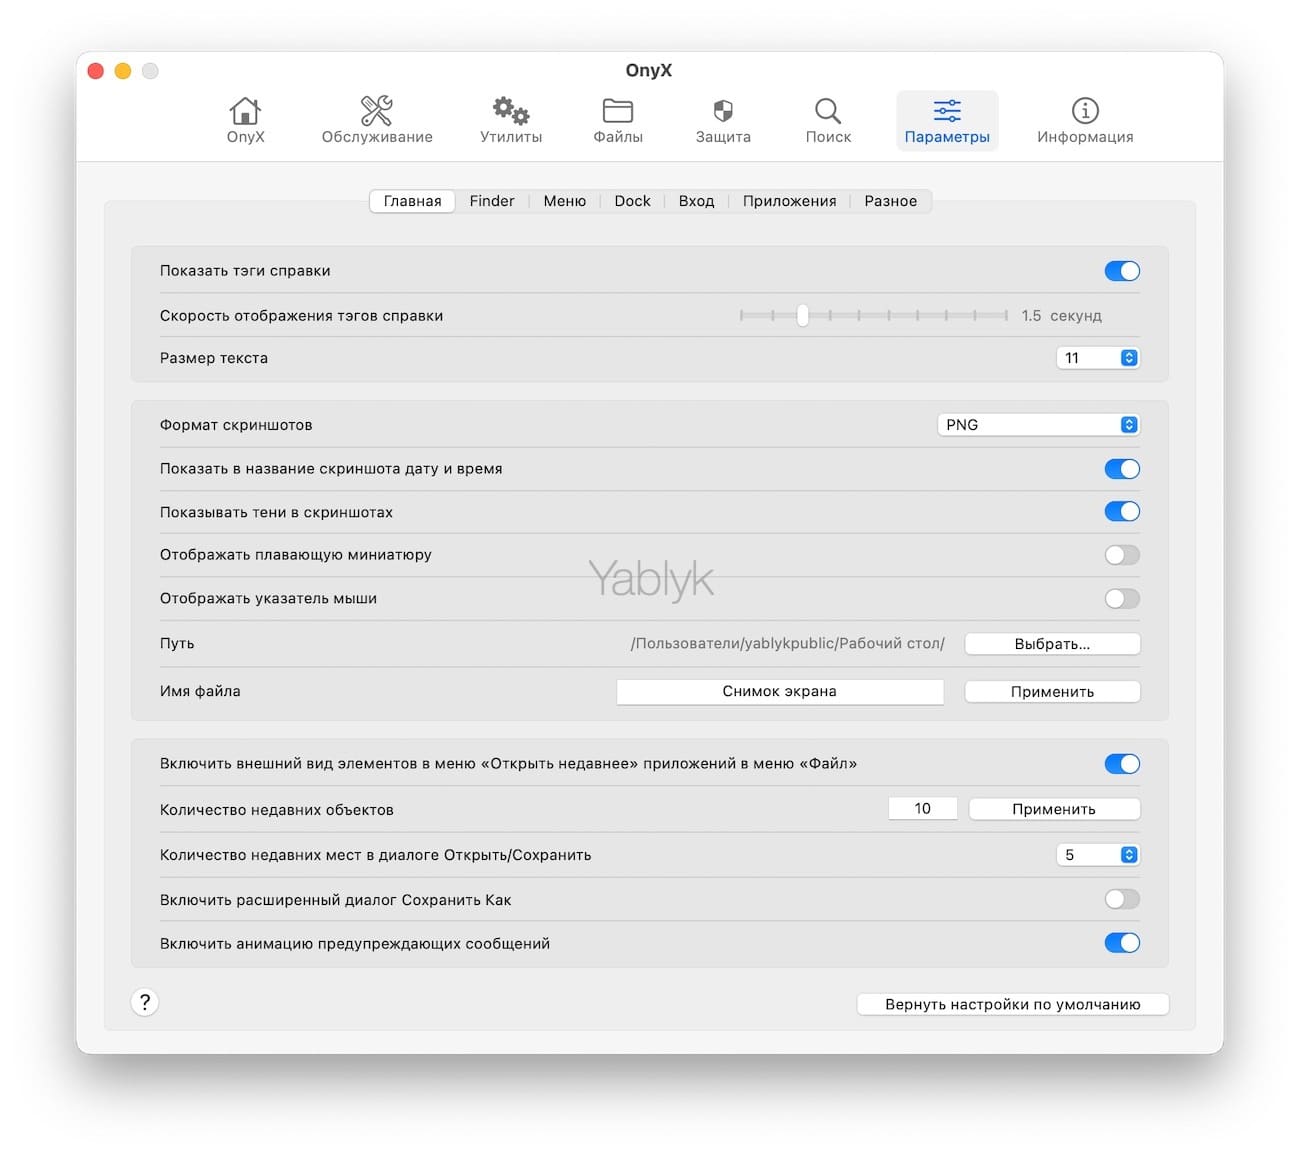 Onyx - утилита для macOS, которая позволяет настроить систему без Терминала